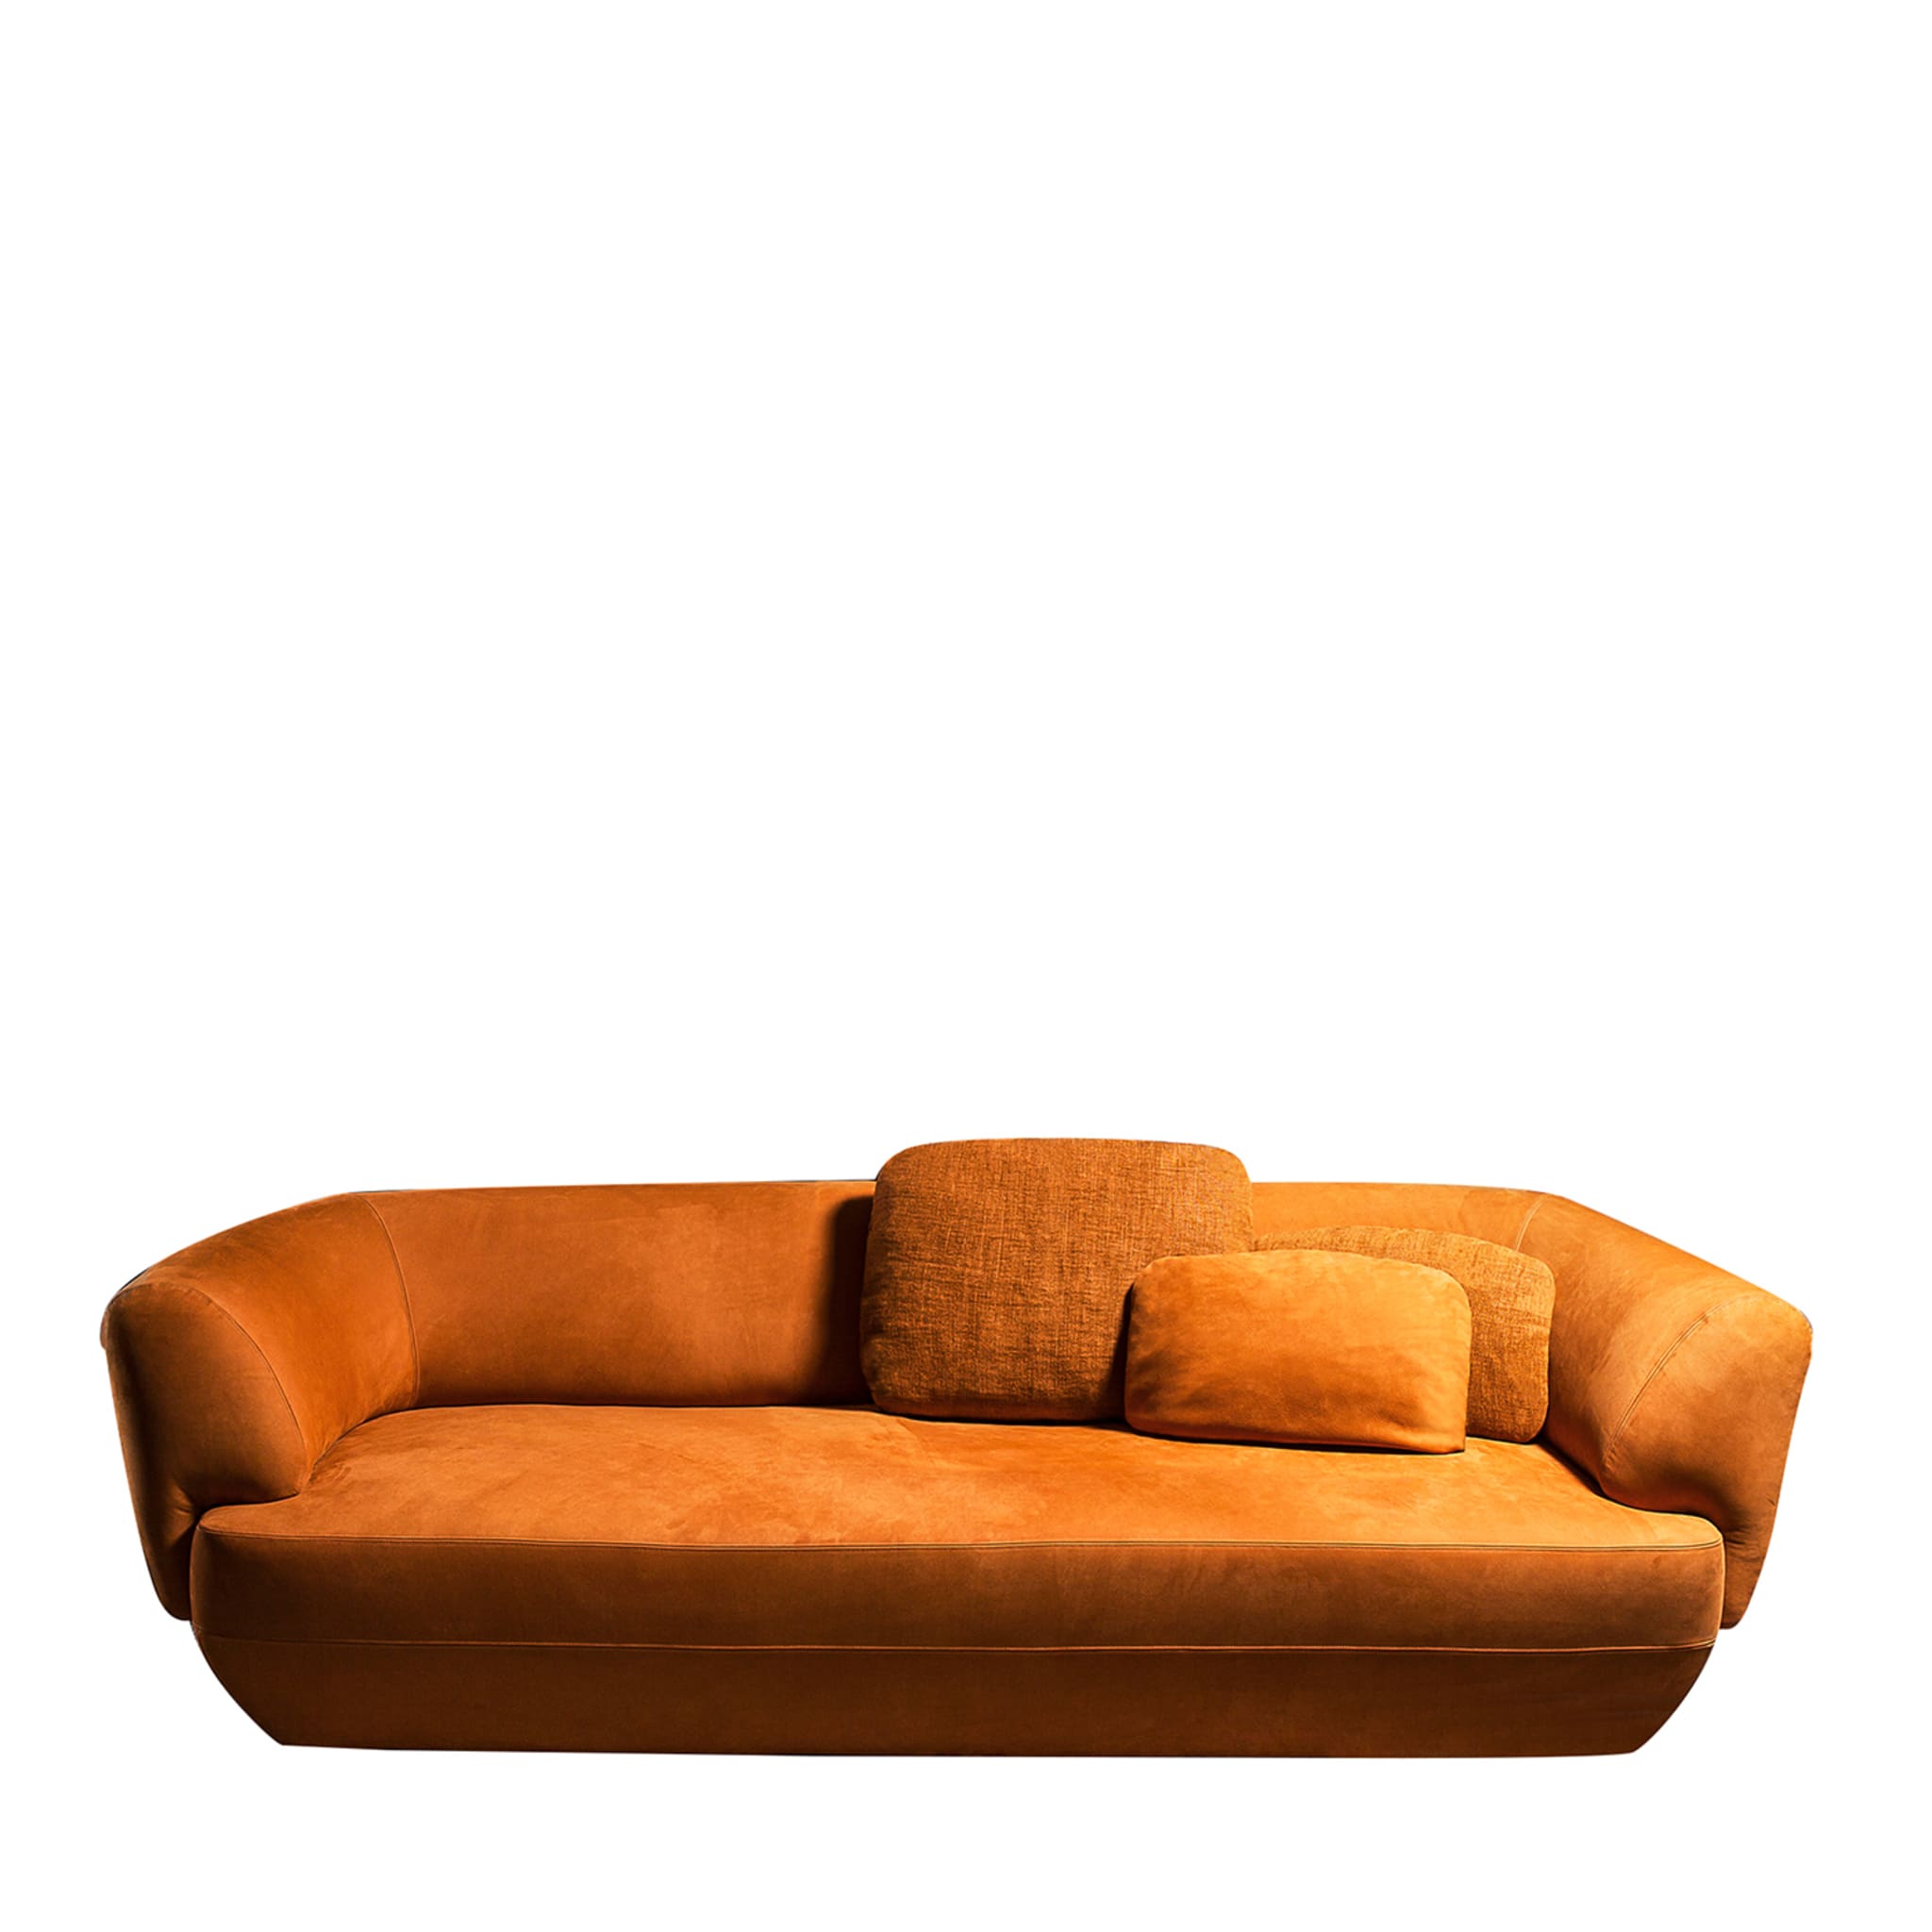 Confident 360 Orange Sofa by Gianluigi Landoni - Main view